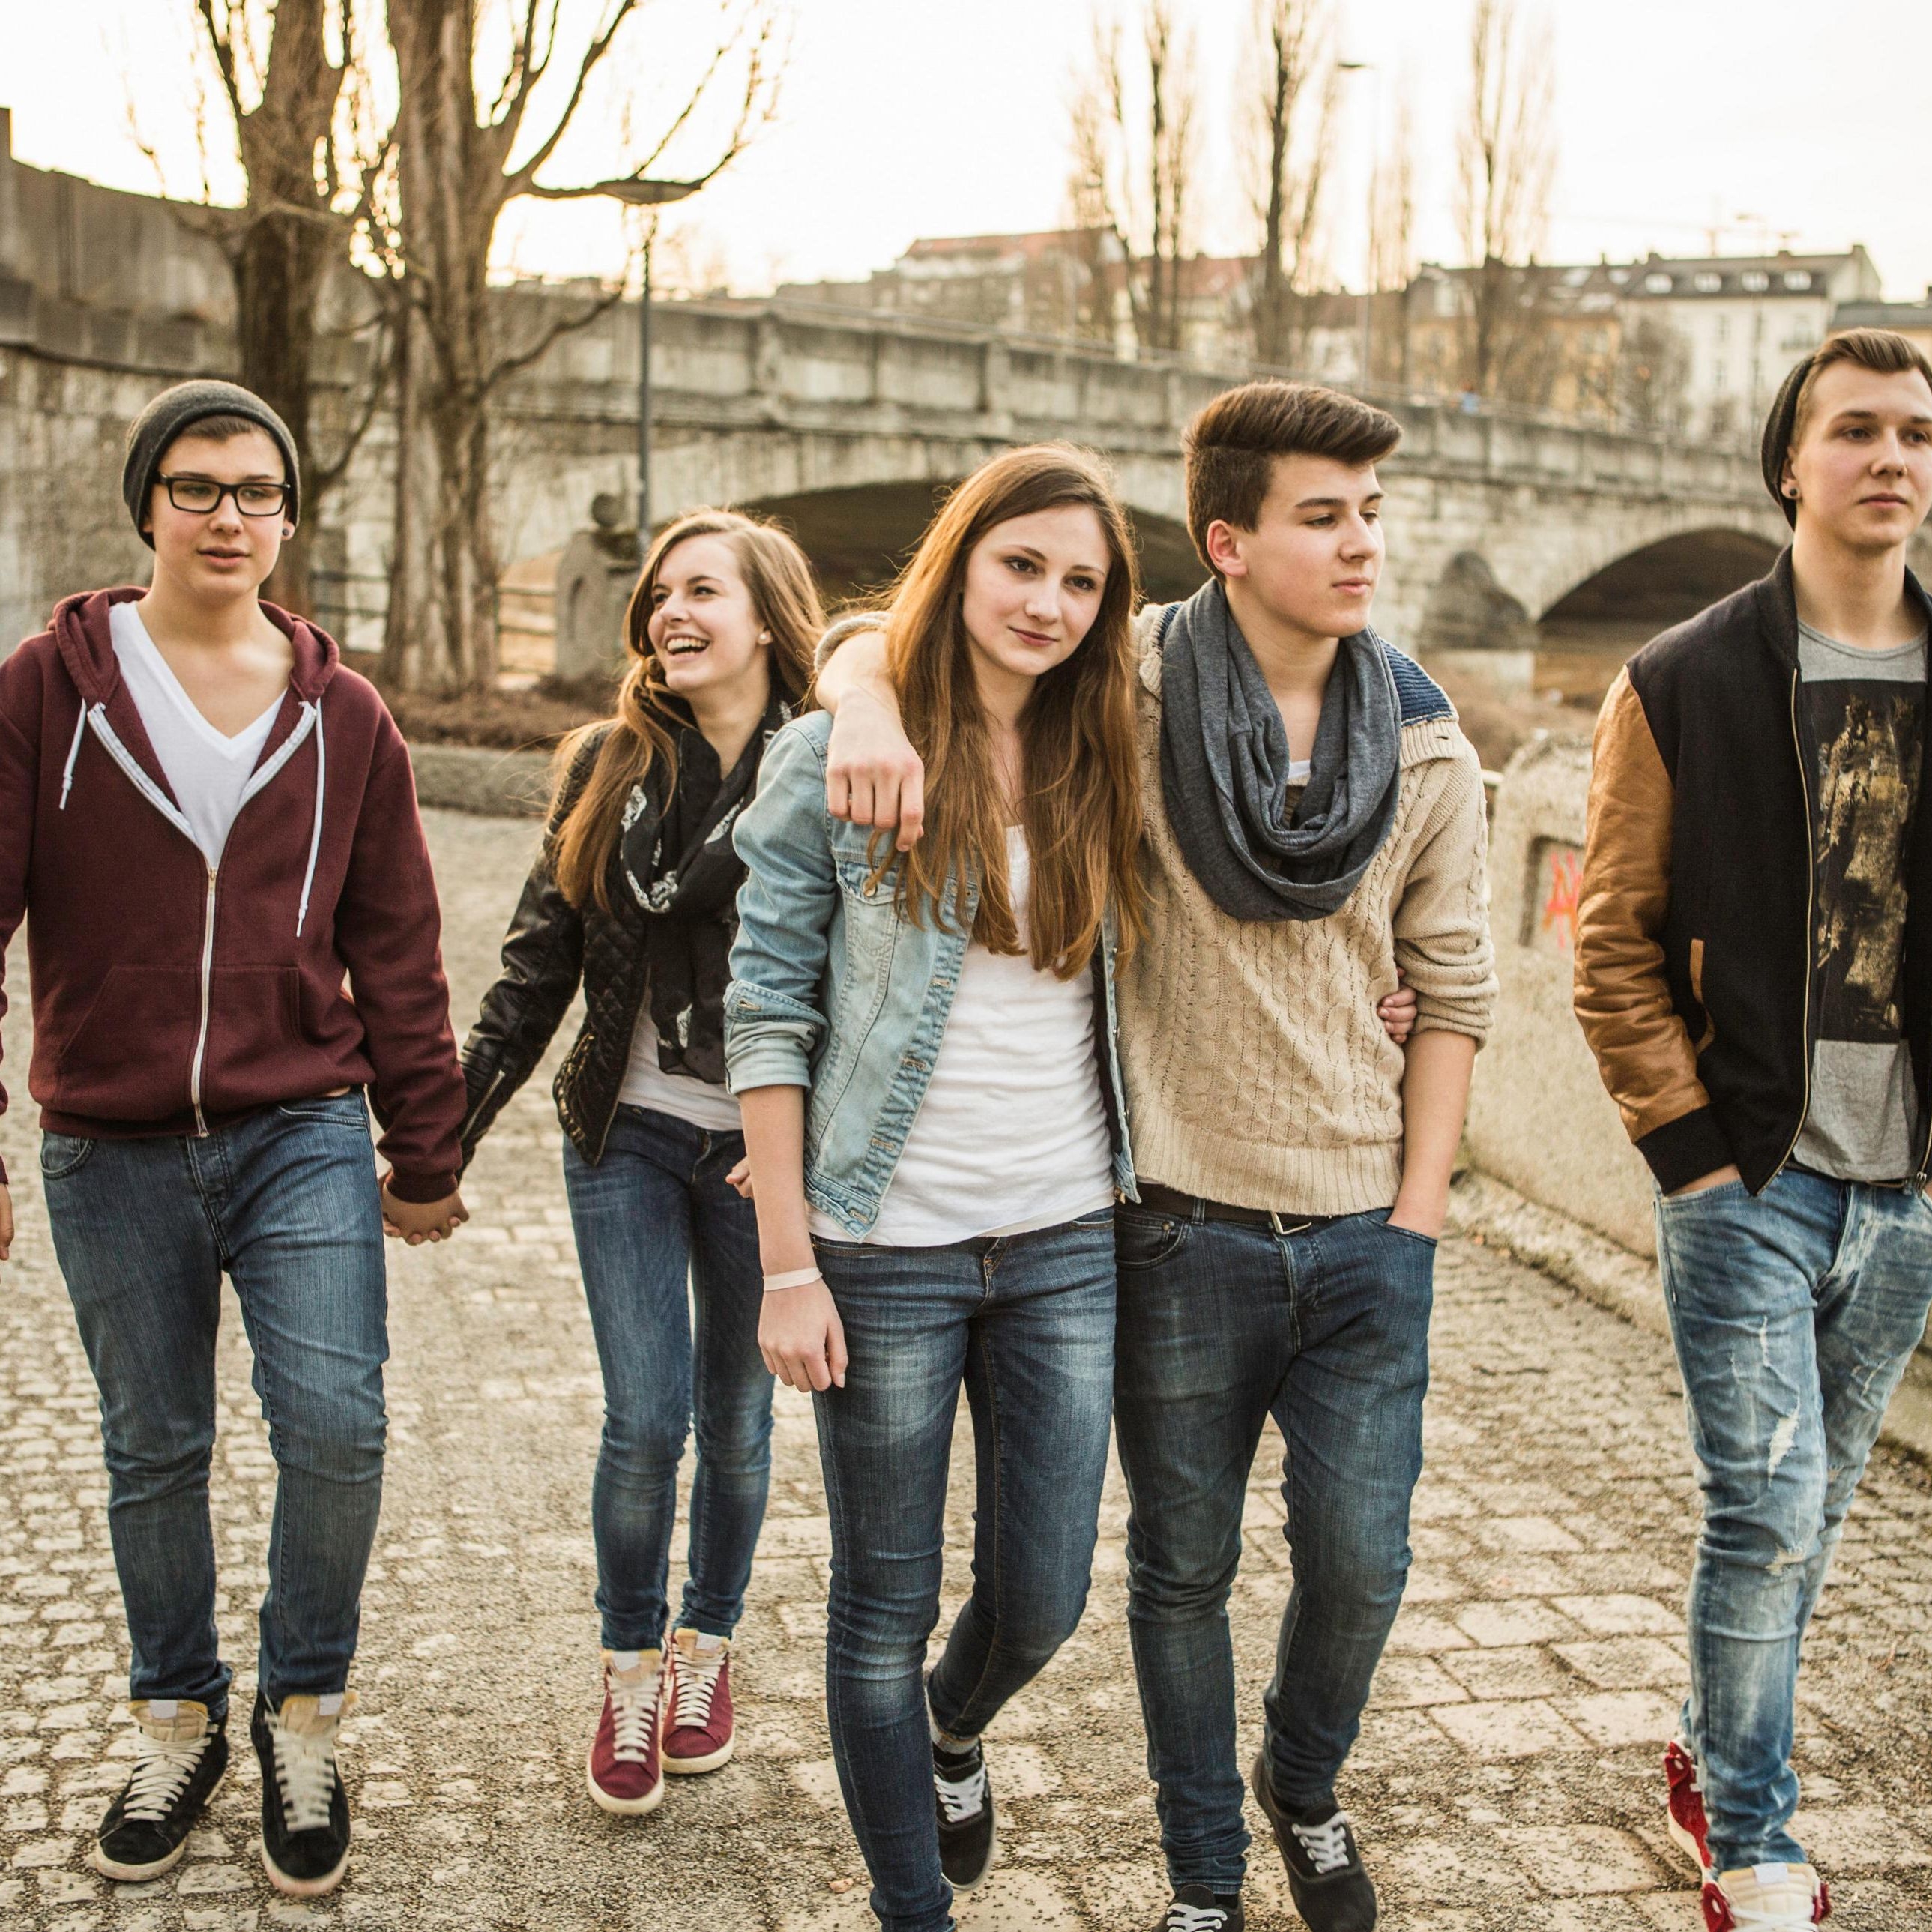 Г подростки. Группа подростков на улице. Фото подростка. Стильные подростки. Группа друзей подростков.